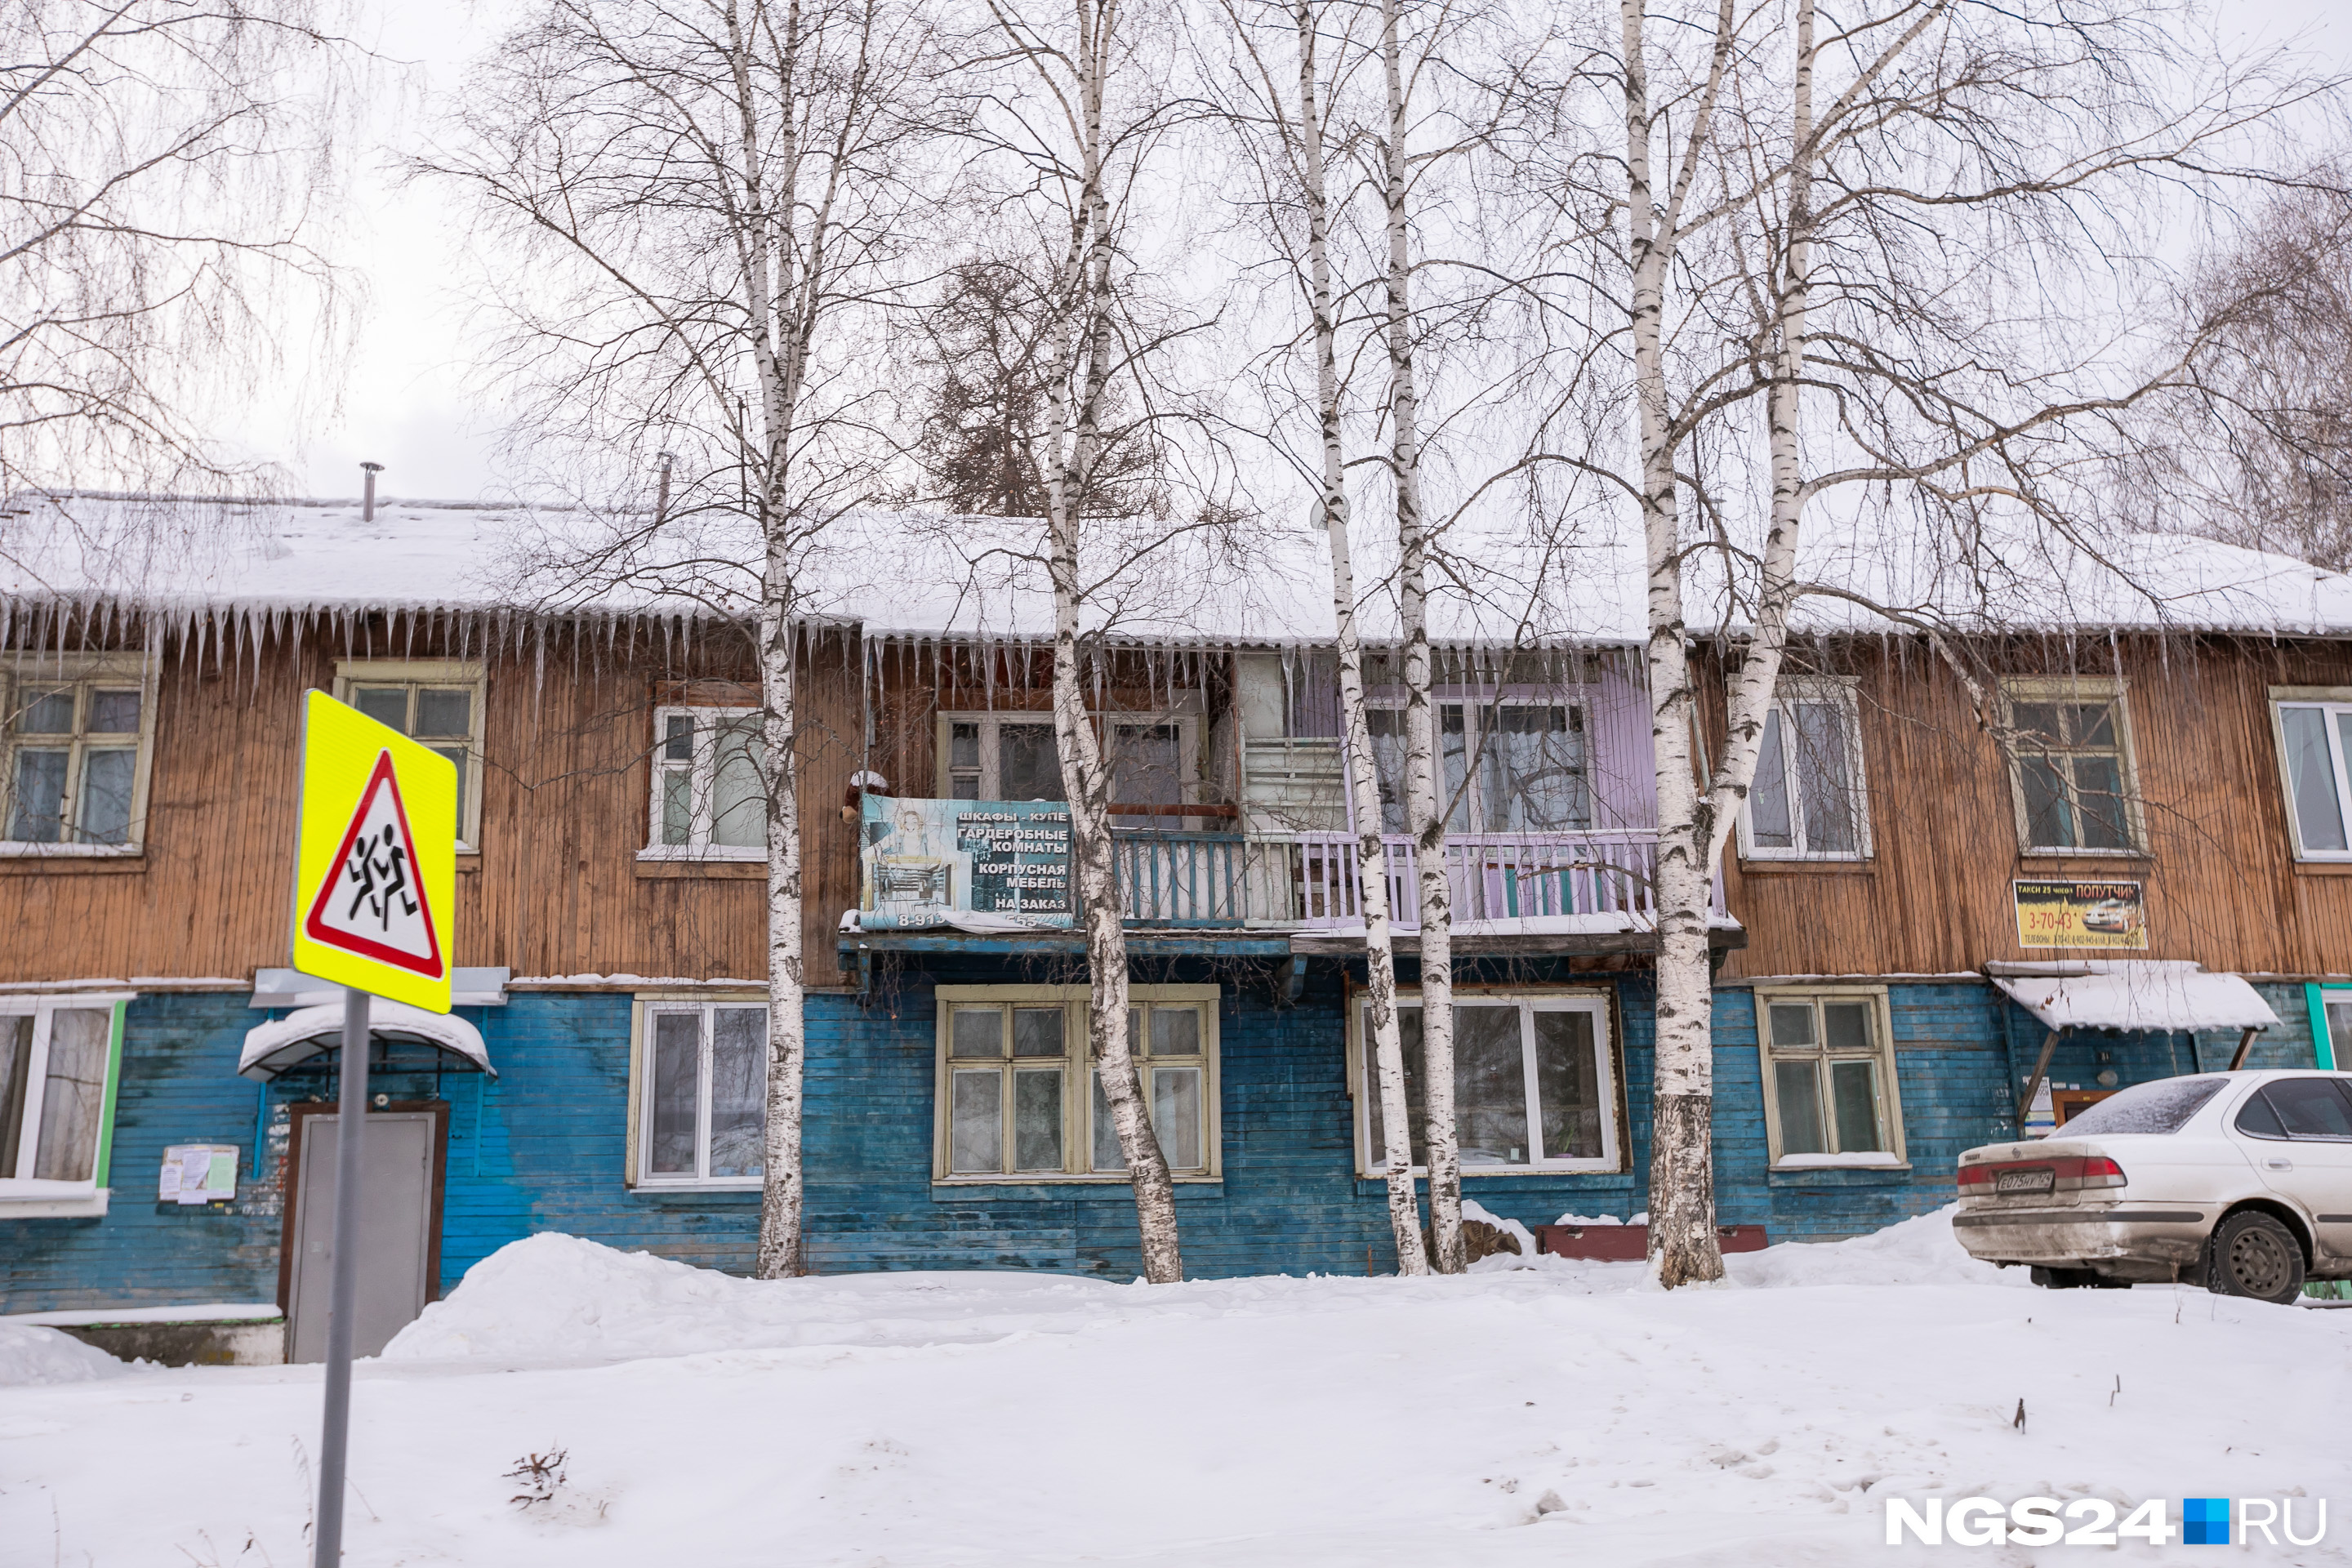 Жители городка сетуют в соцсетях, что Красноярск украшают к Универсиаде, а в Дивногорске только кусочками красят фасады 